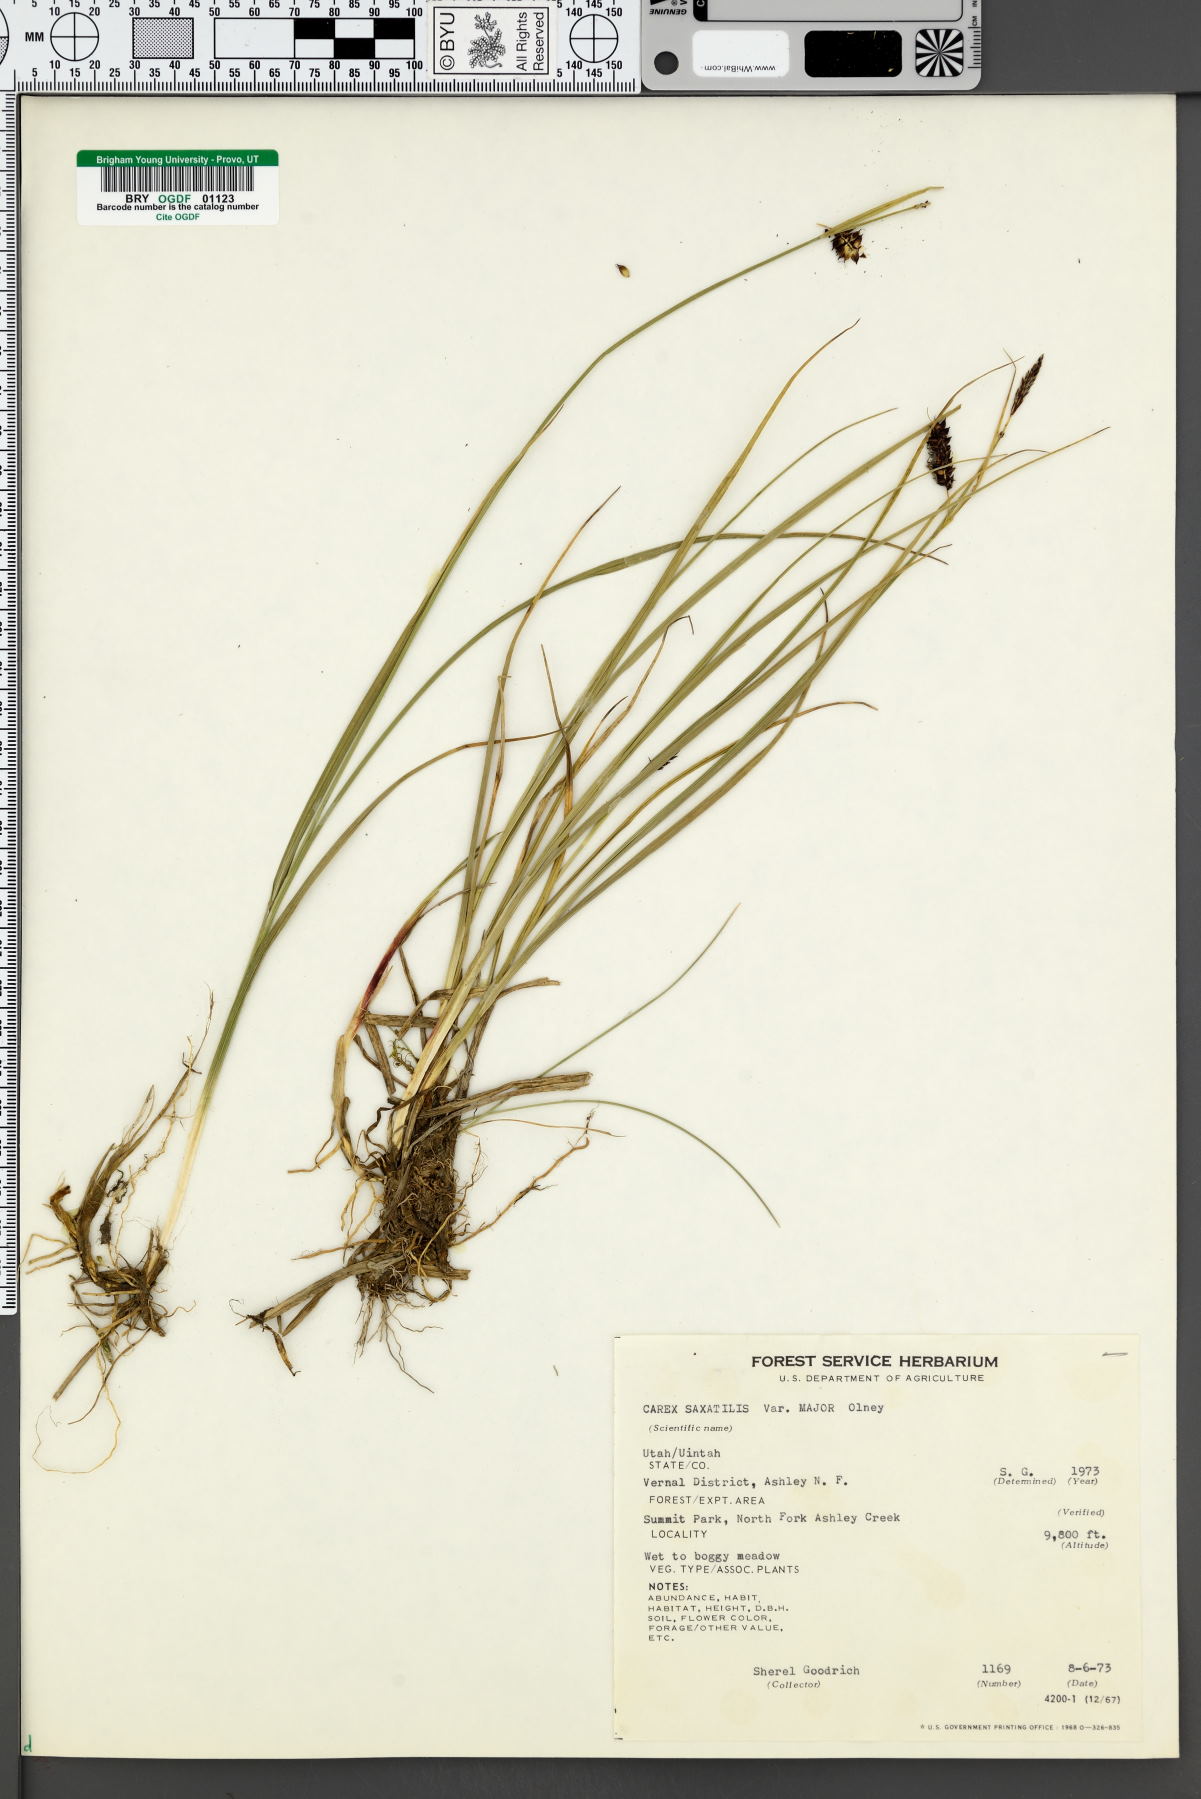 Carex saxatilis var. major image